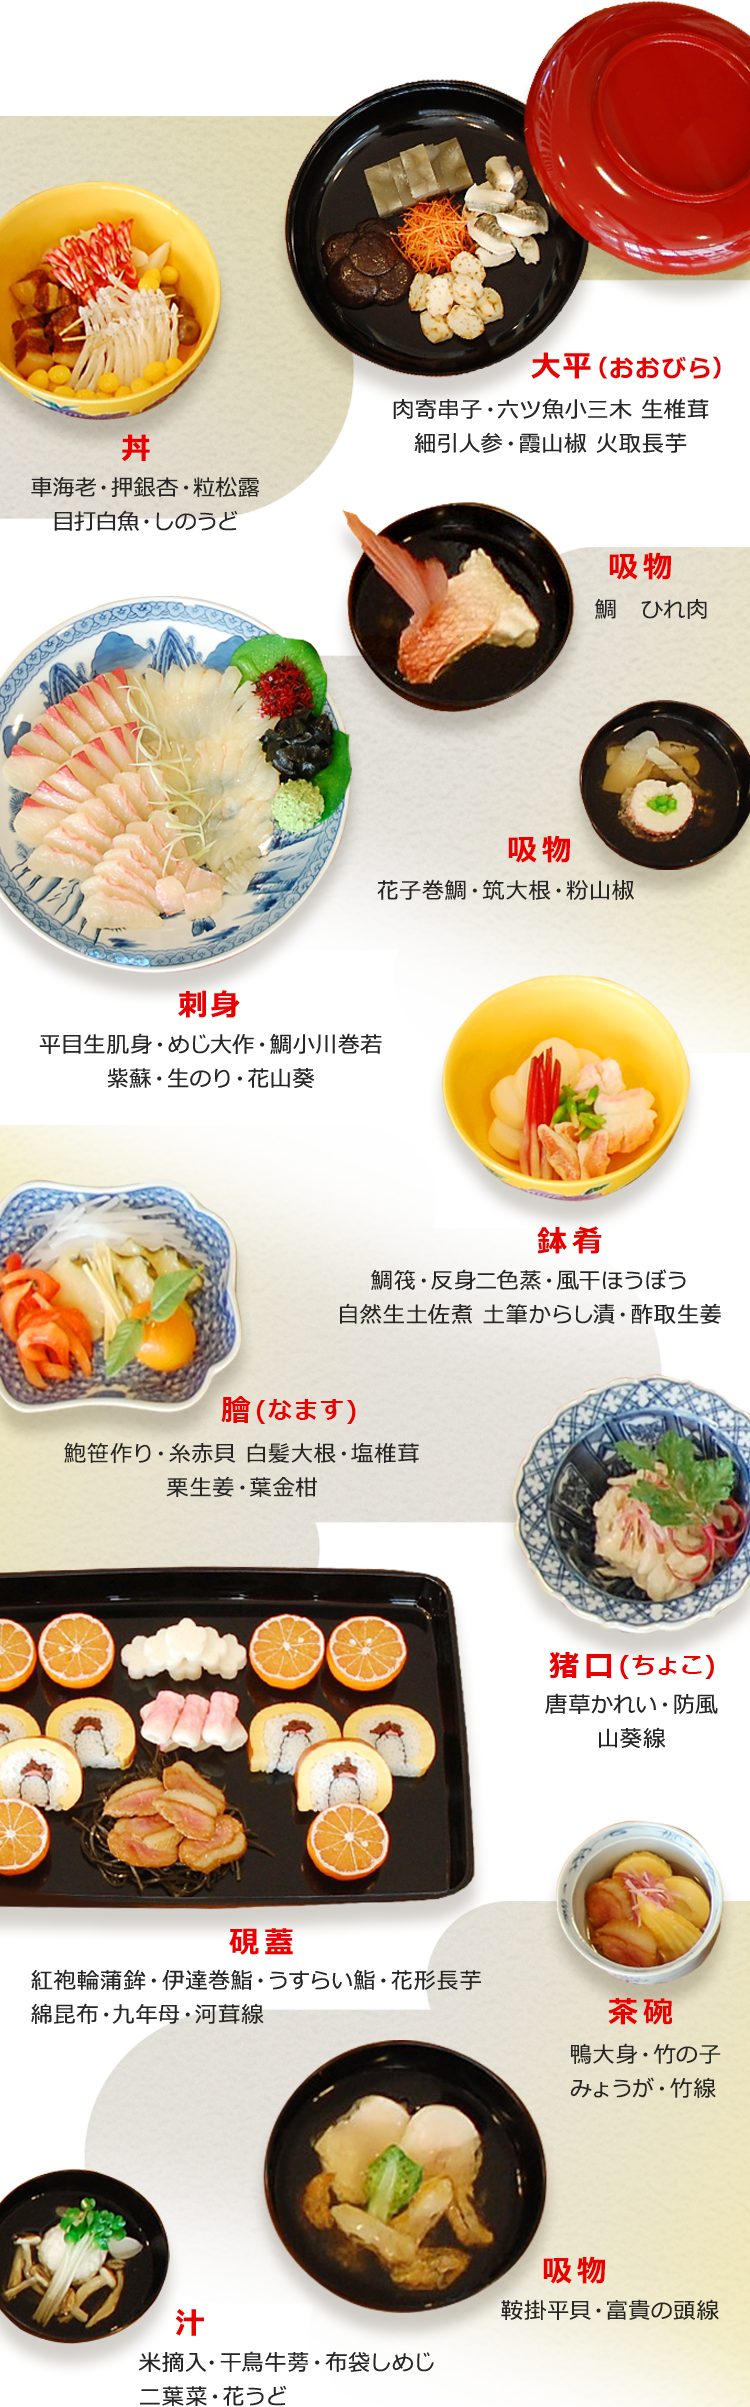 洋食のルーツ 西洋料理の事始め | 洋食ルーツストーリー | Plenus 米食